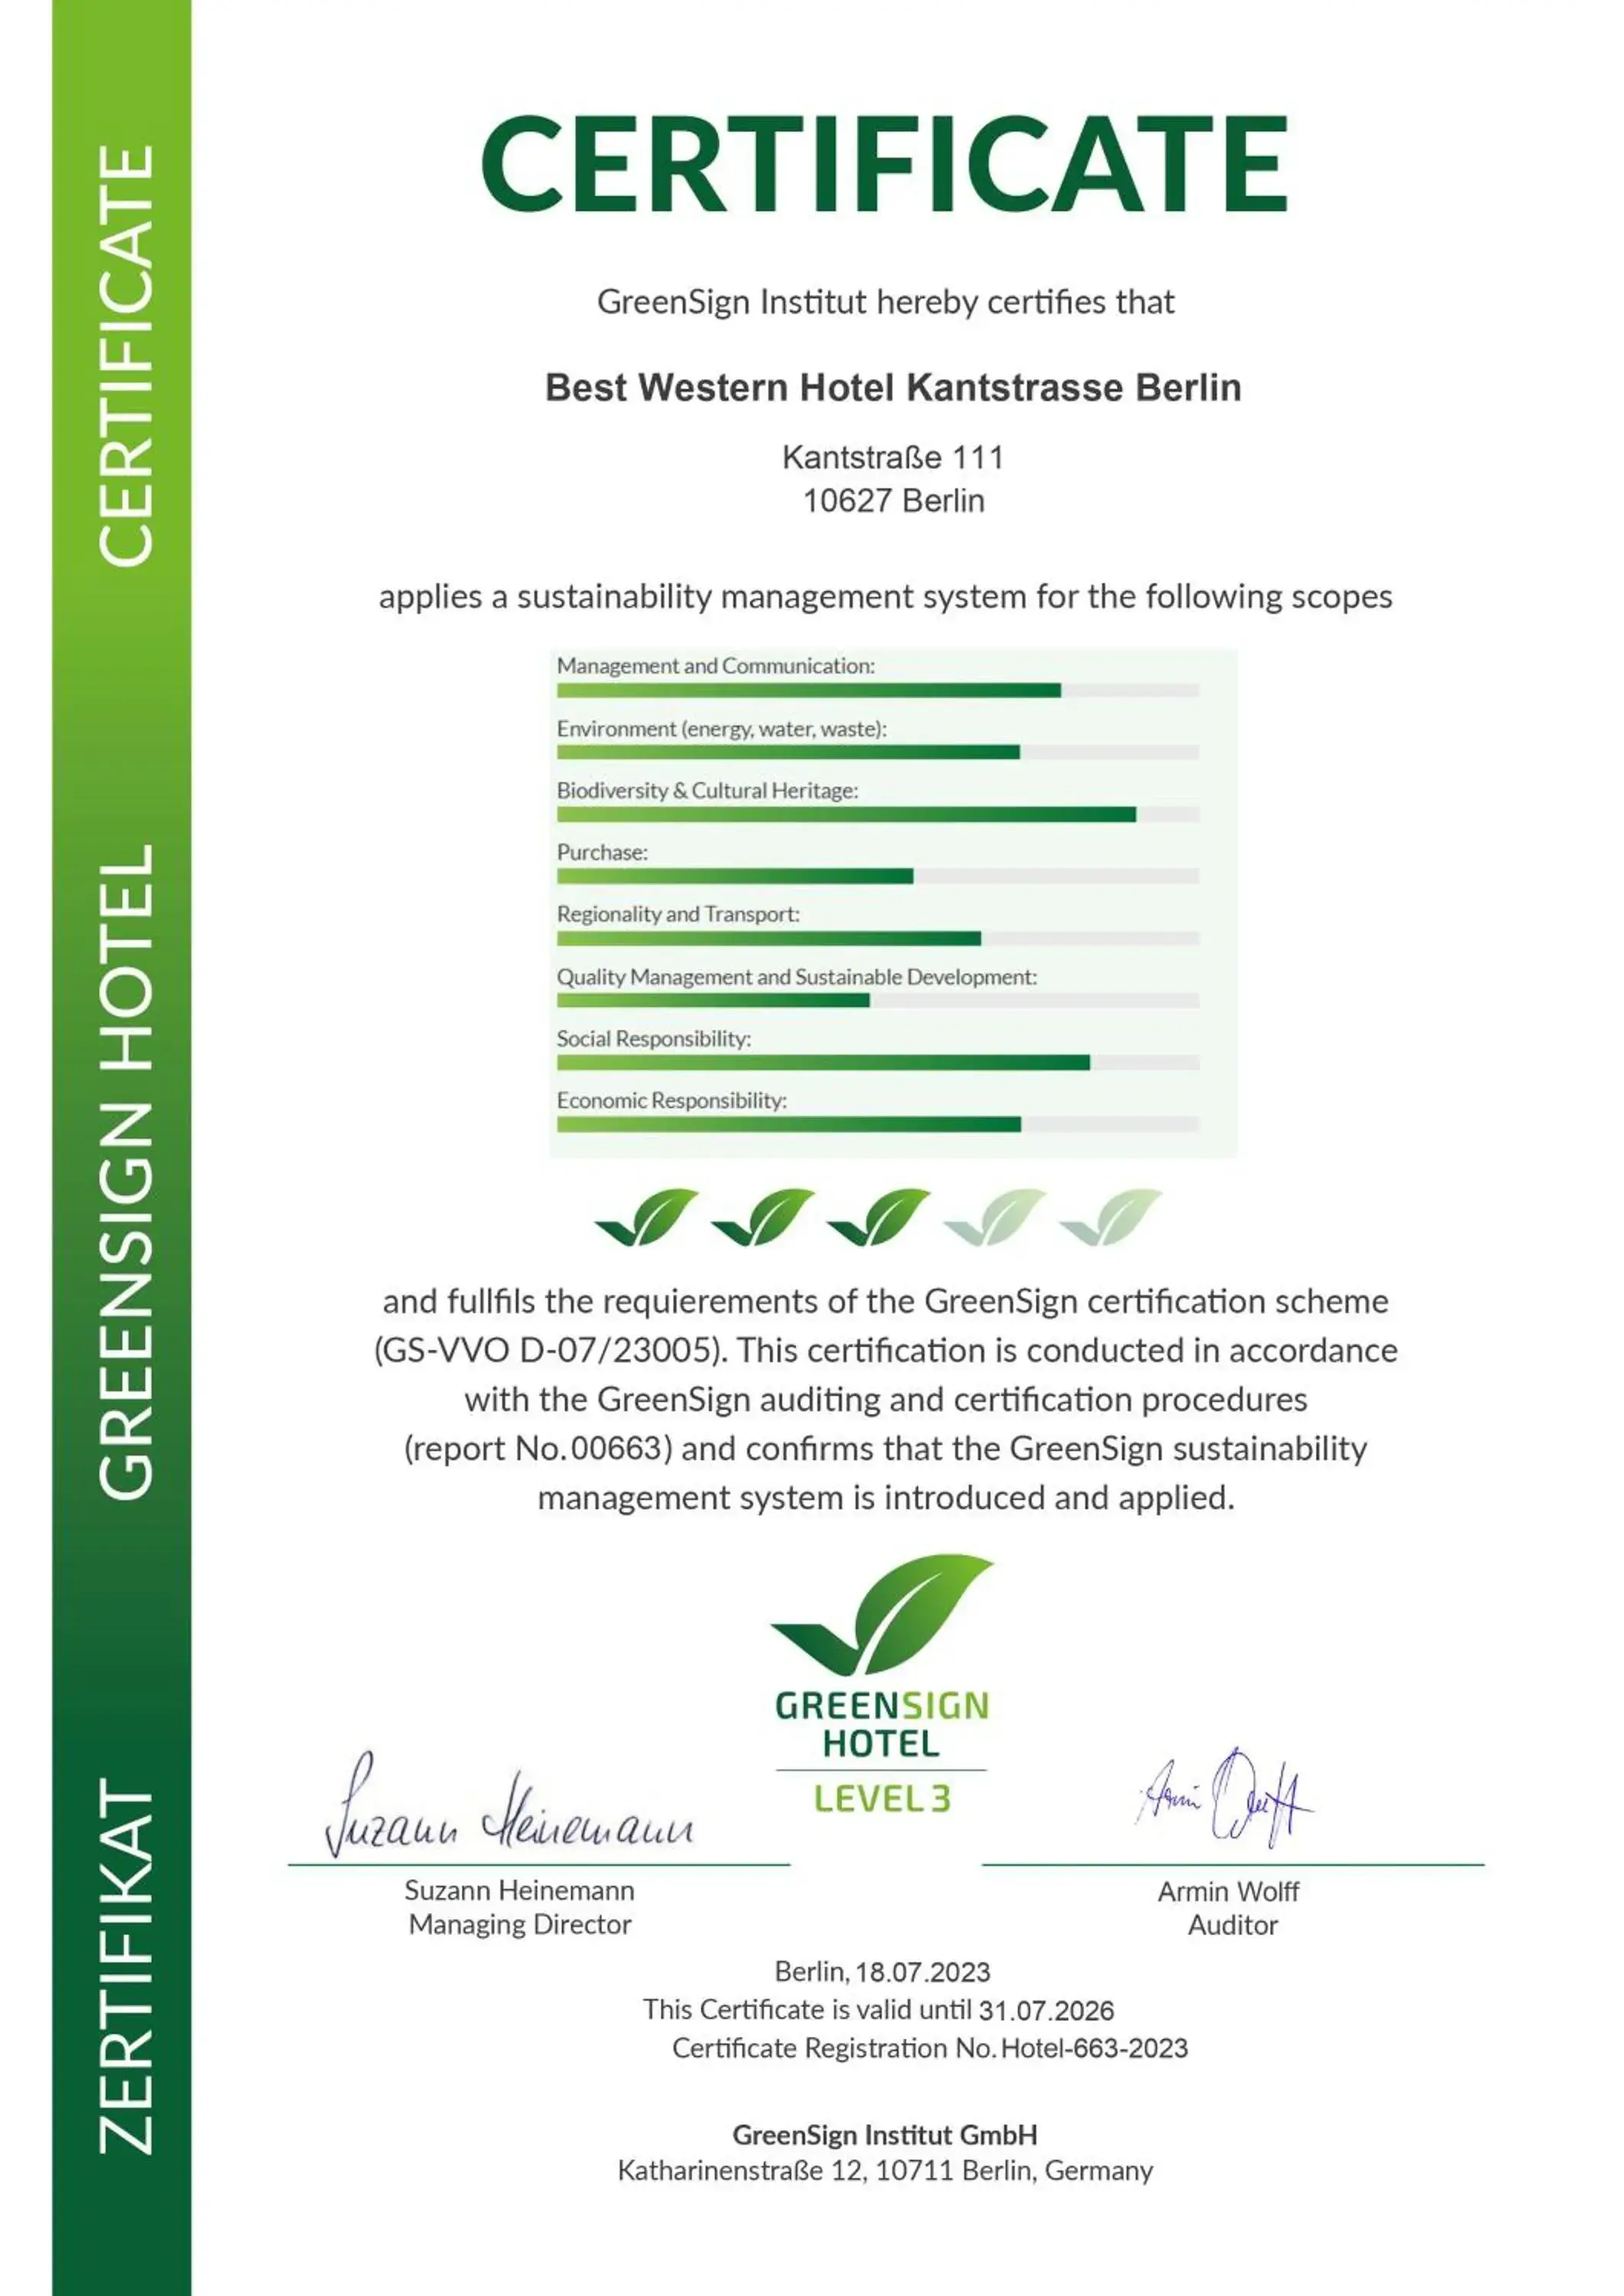 Certificate/Award in Best Western Hotel Kantstrasse Berlin